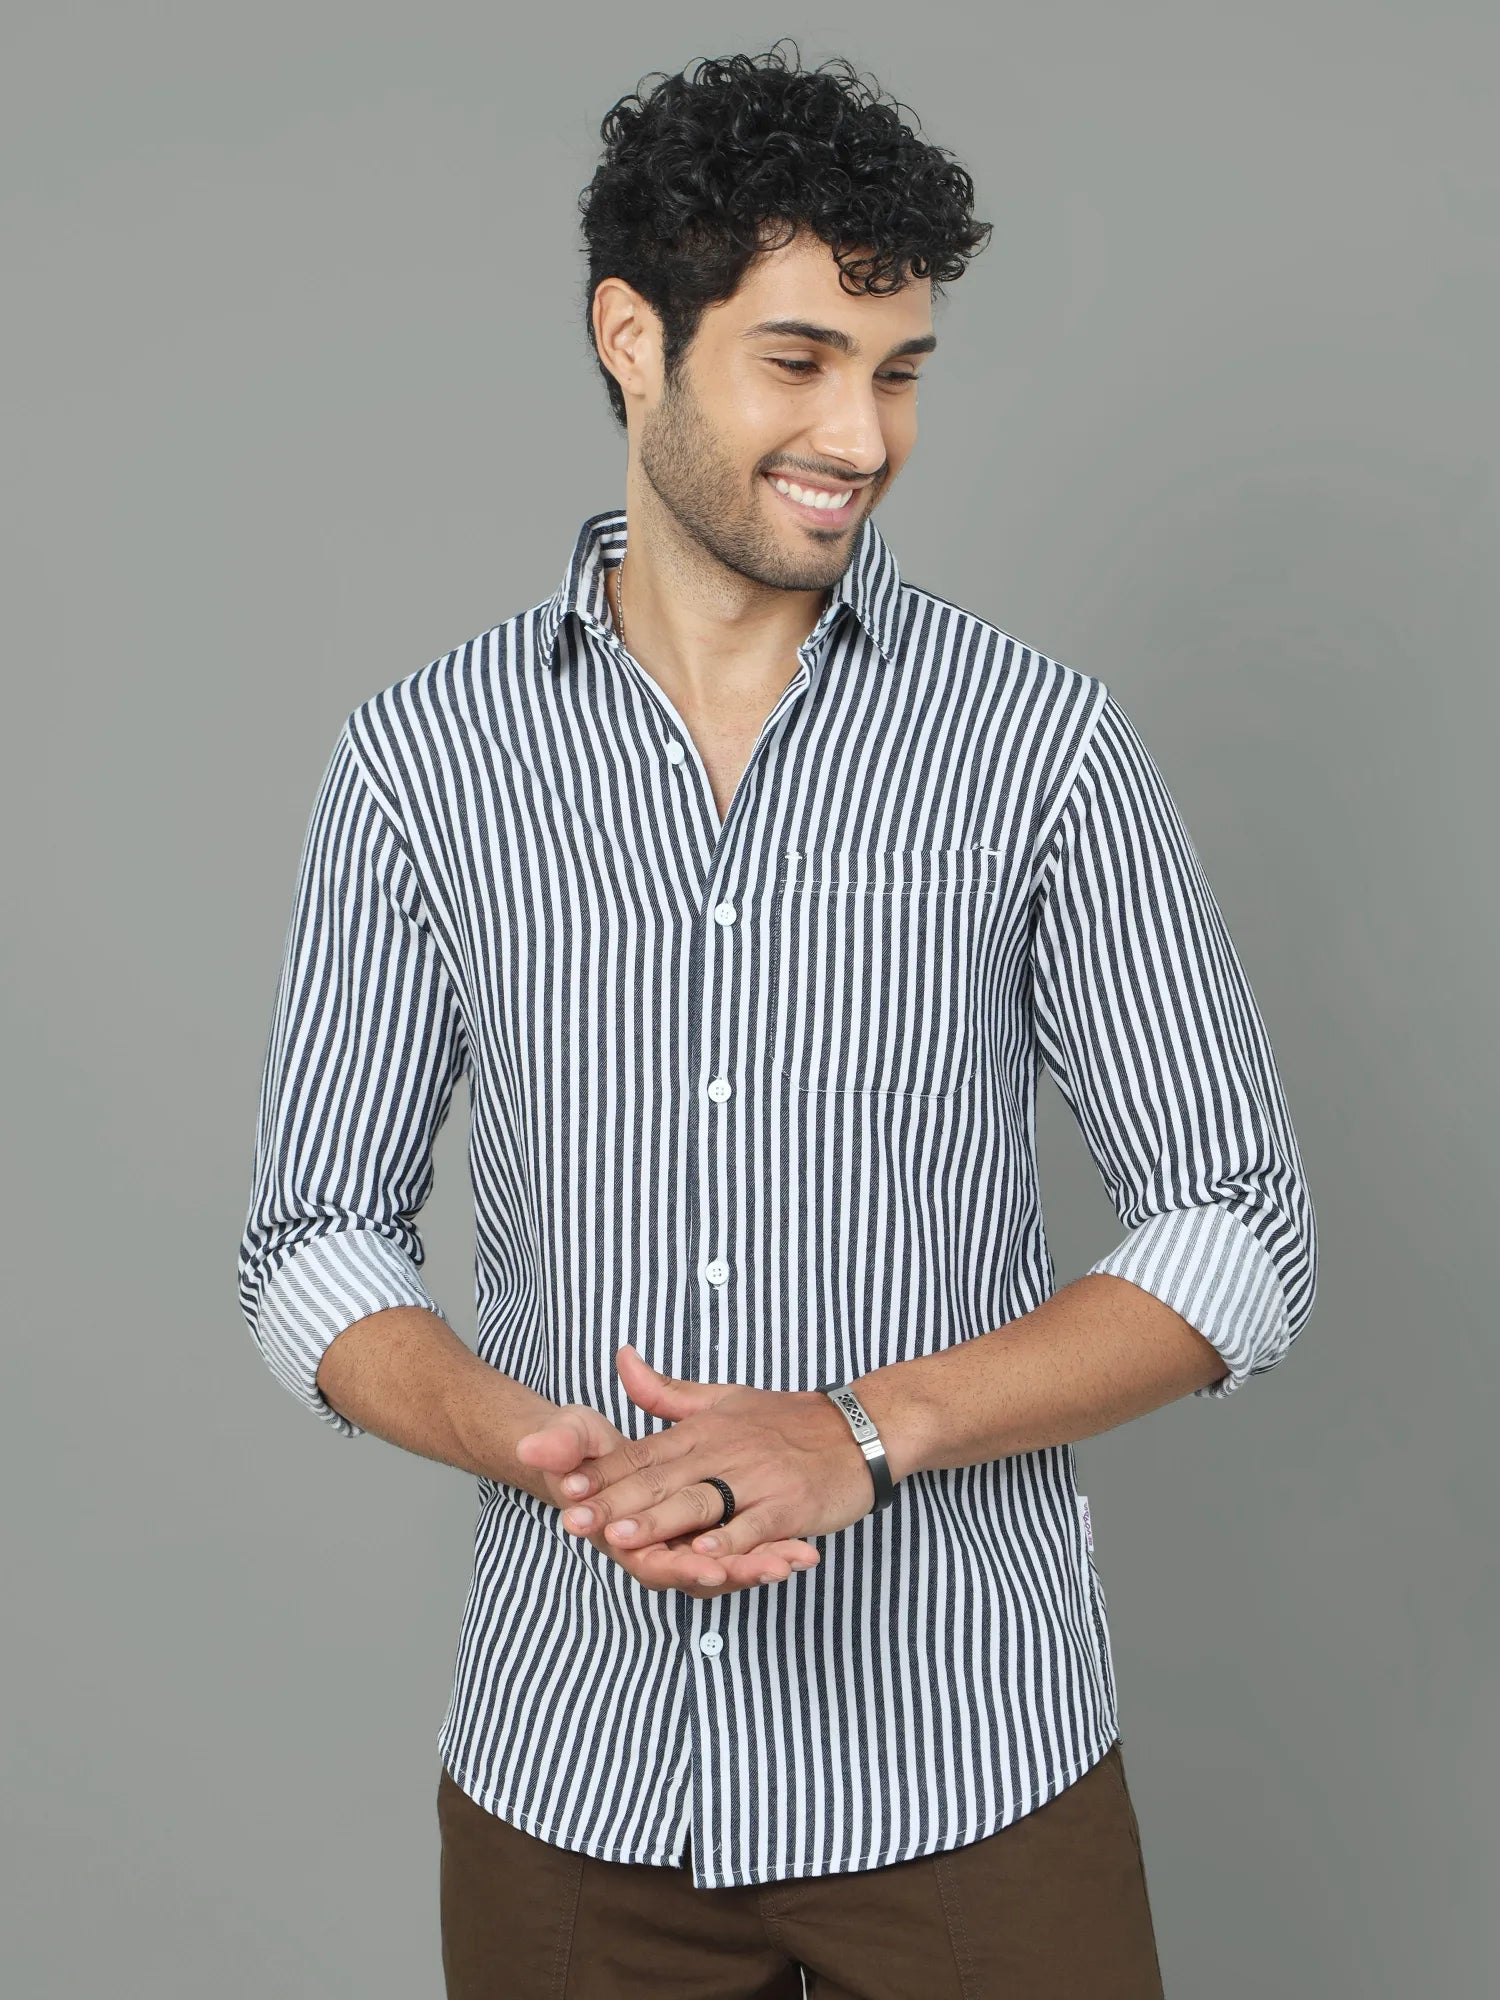 Light Denim Stripes Shirt for Men